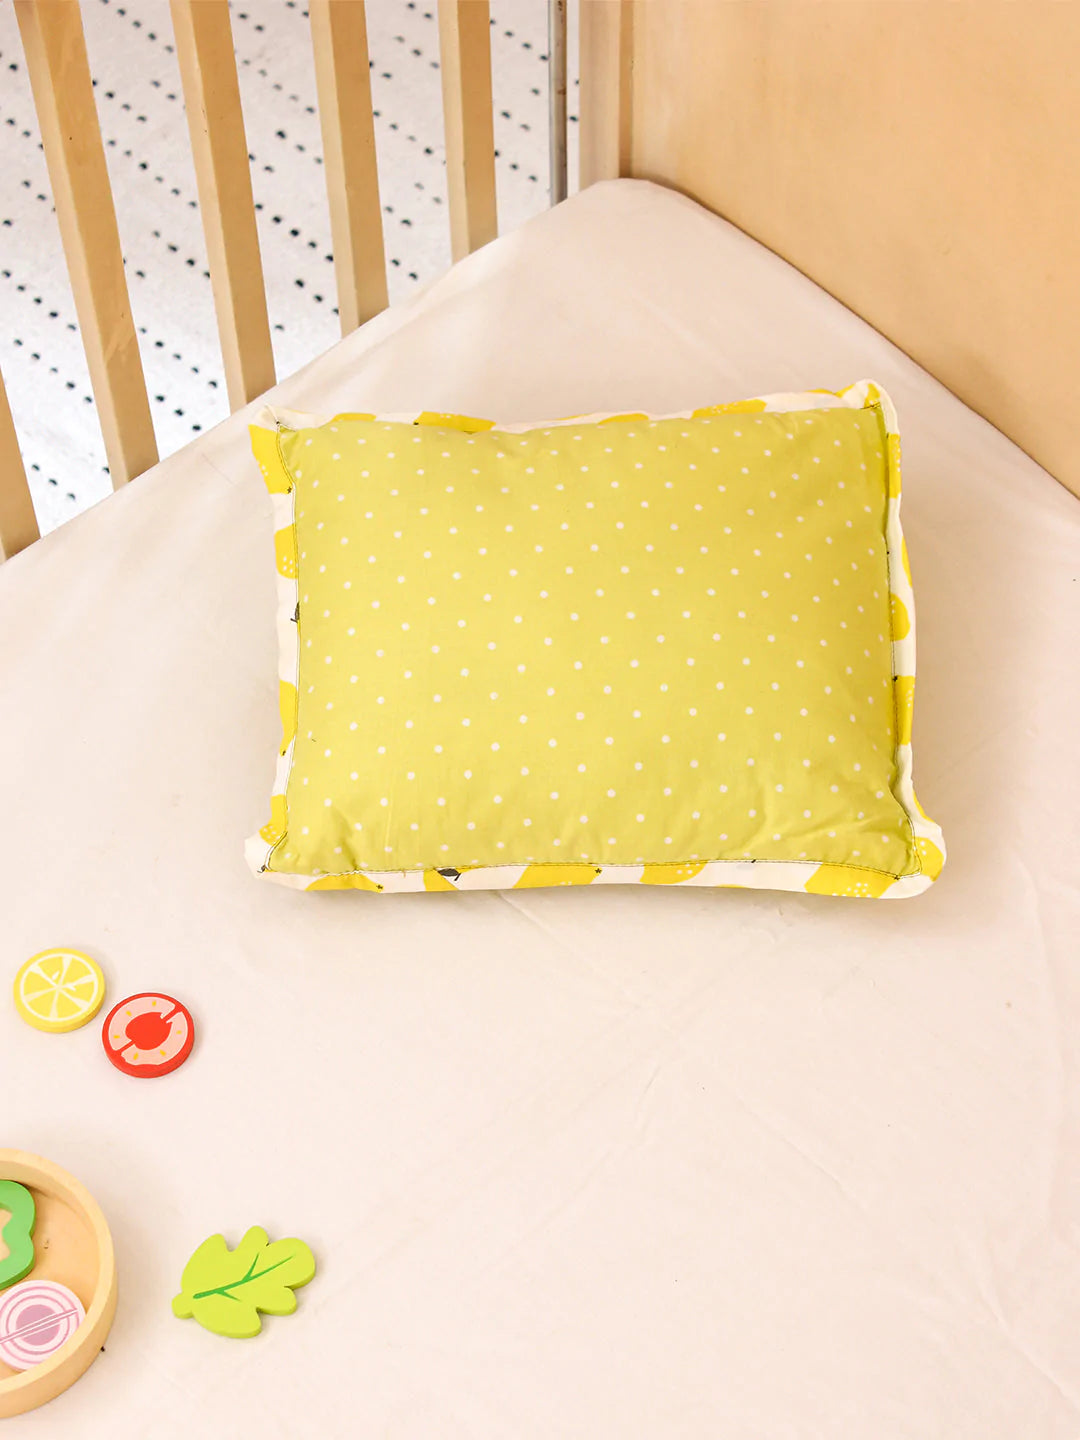 The Sweet Lemon Pillow Cover